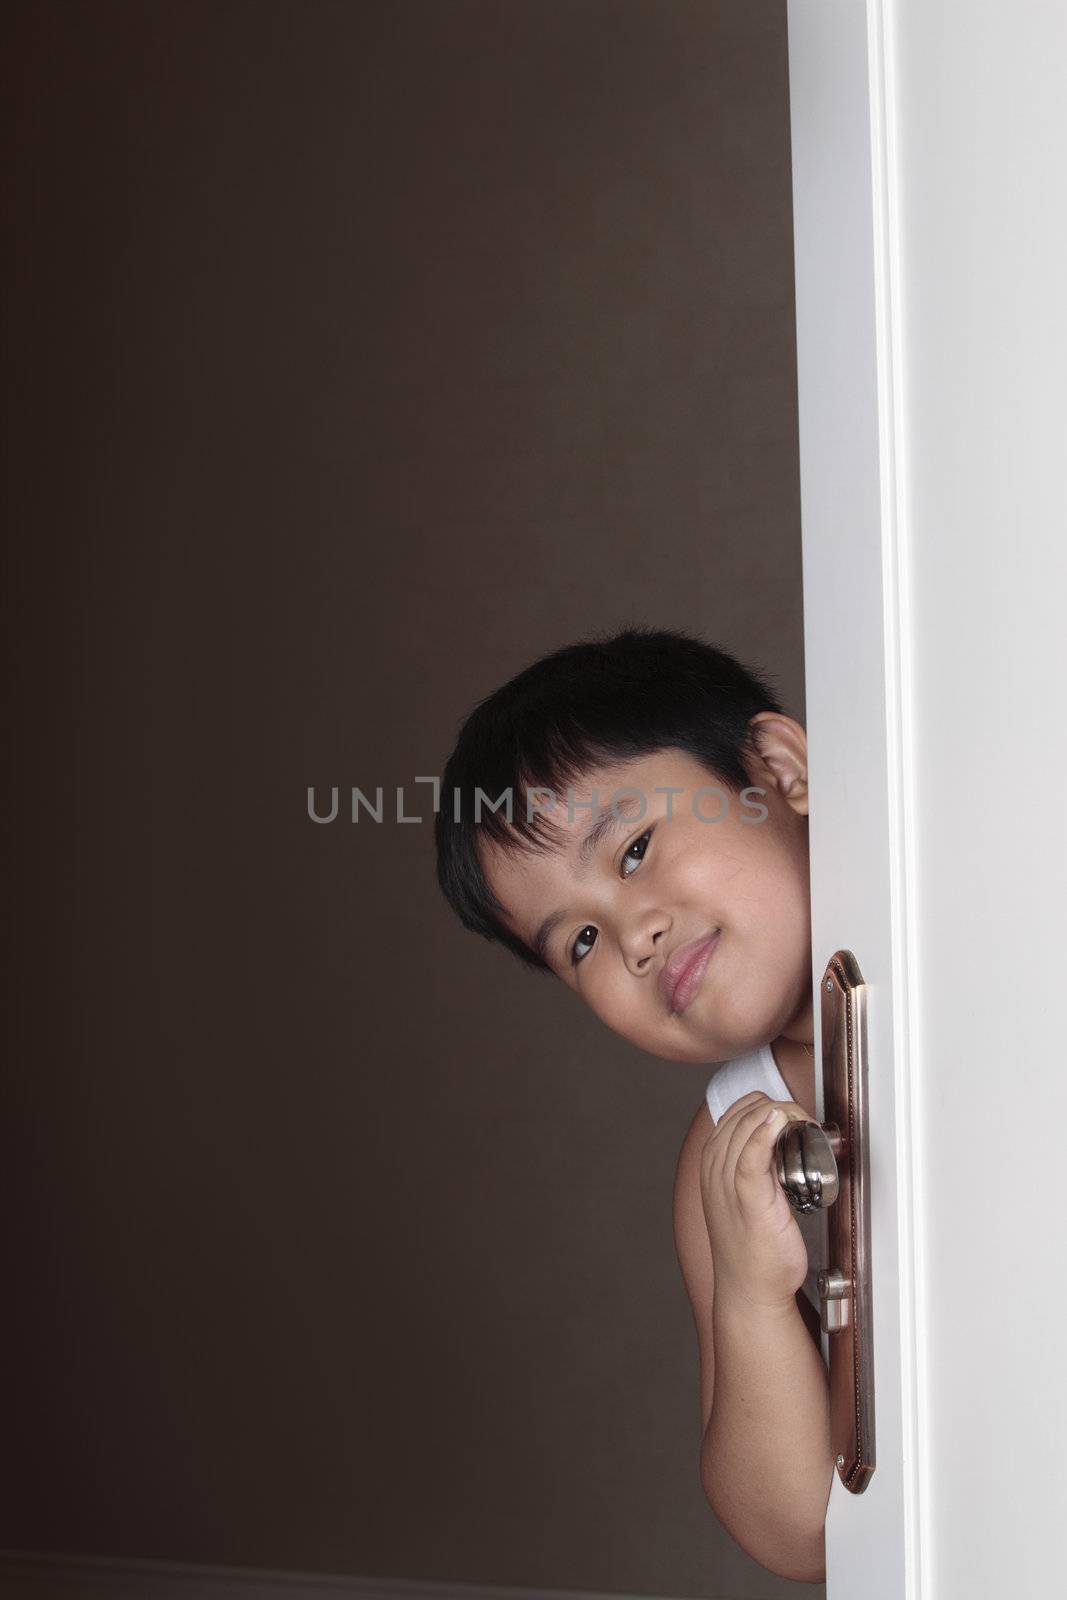 Joyful boy peeping out from behind door concept.
